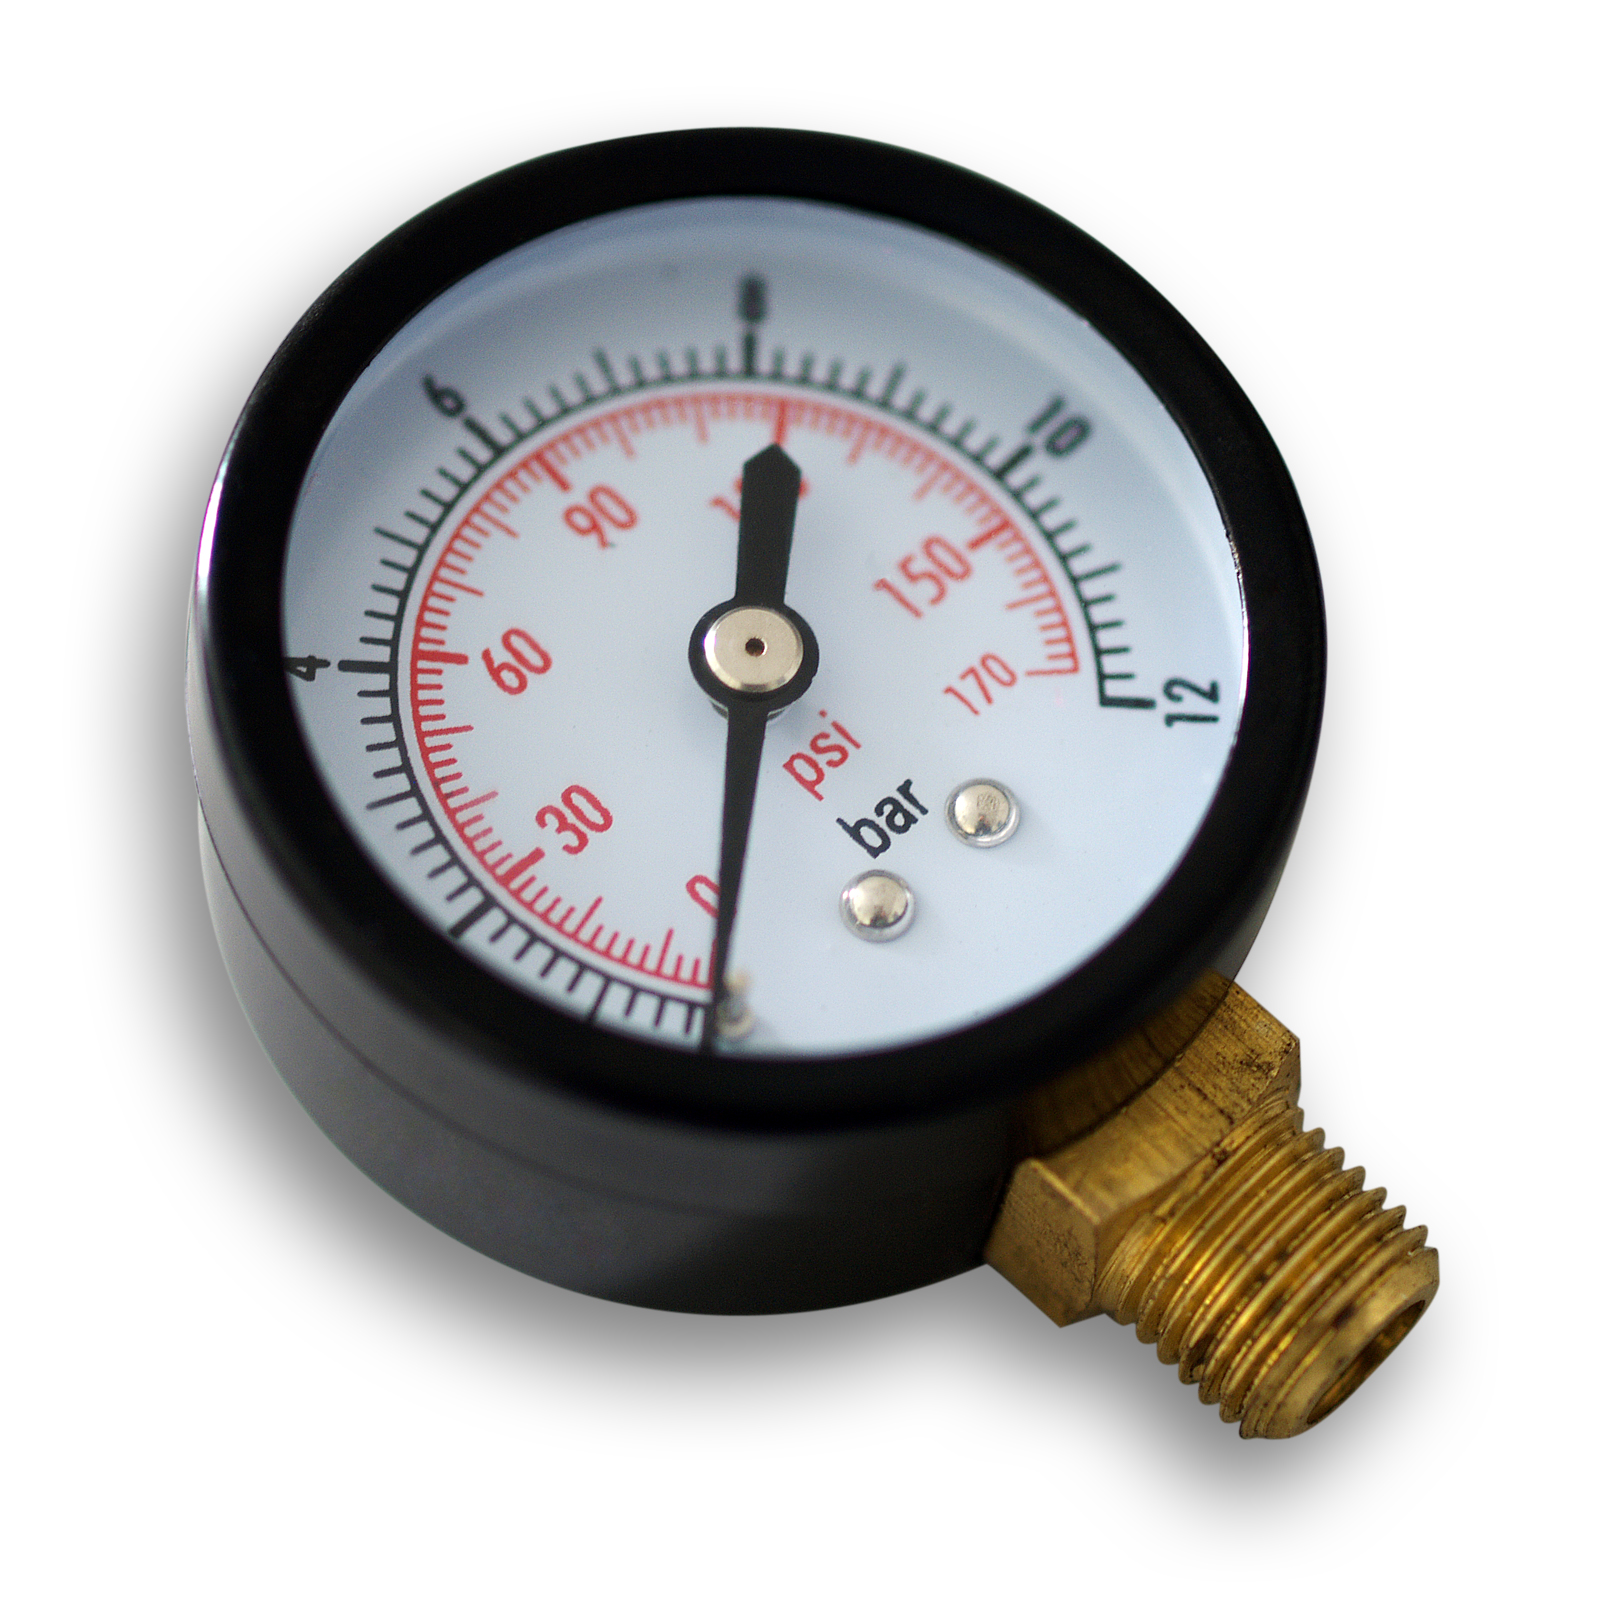 Manómetro de Presión Tipo Radial 0 - 30 psi.